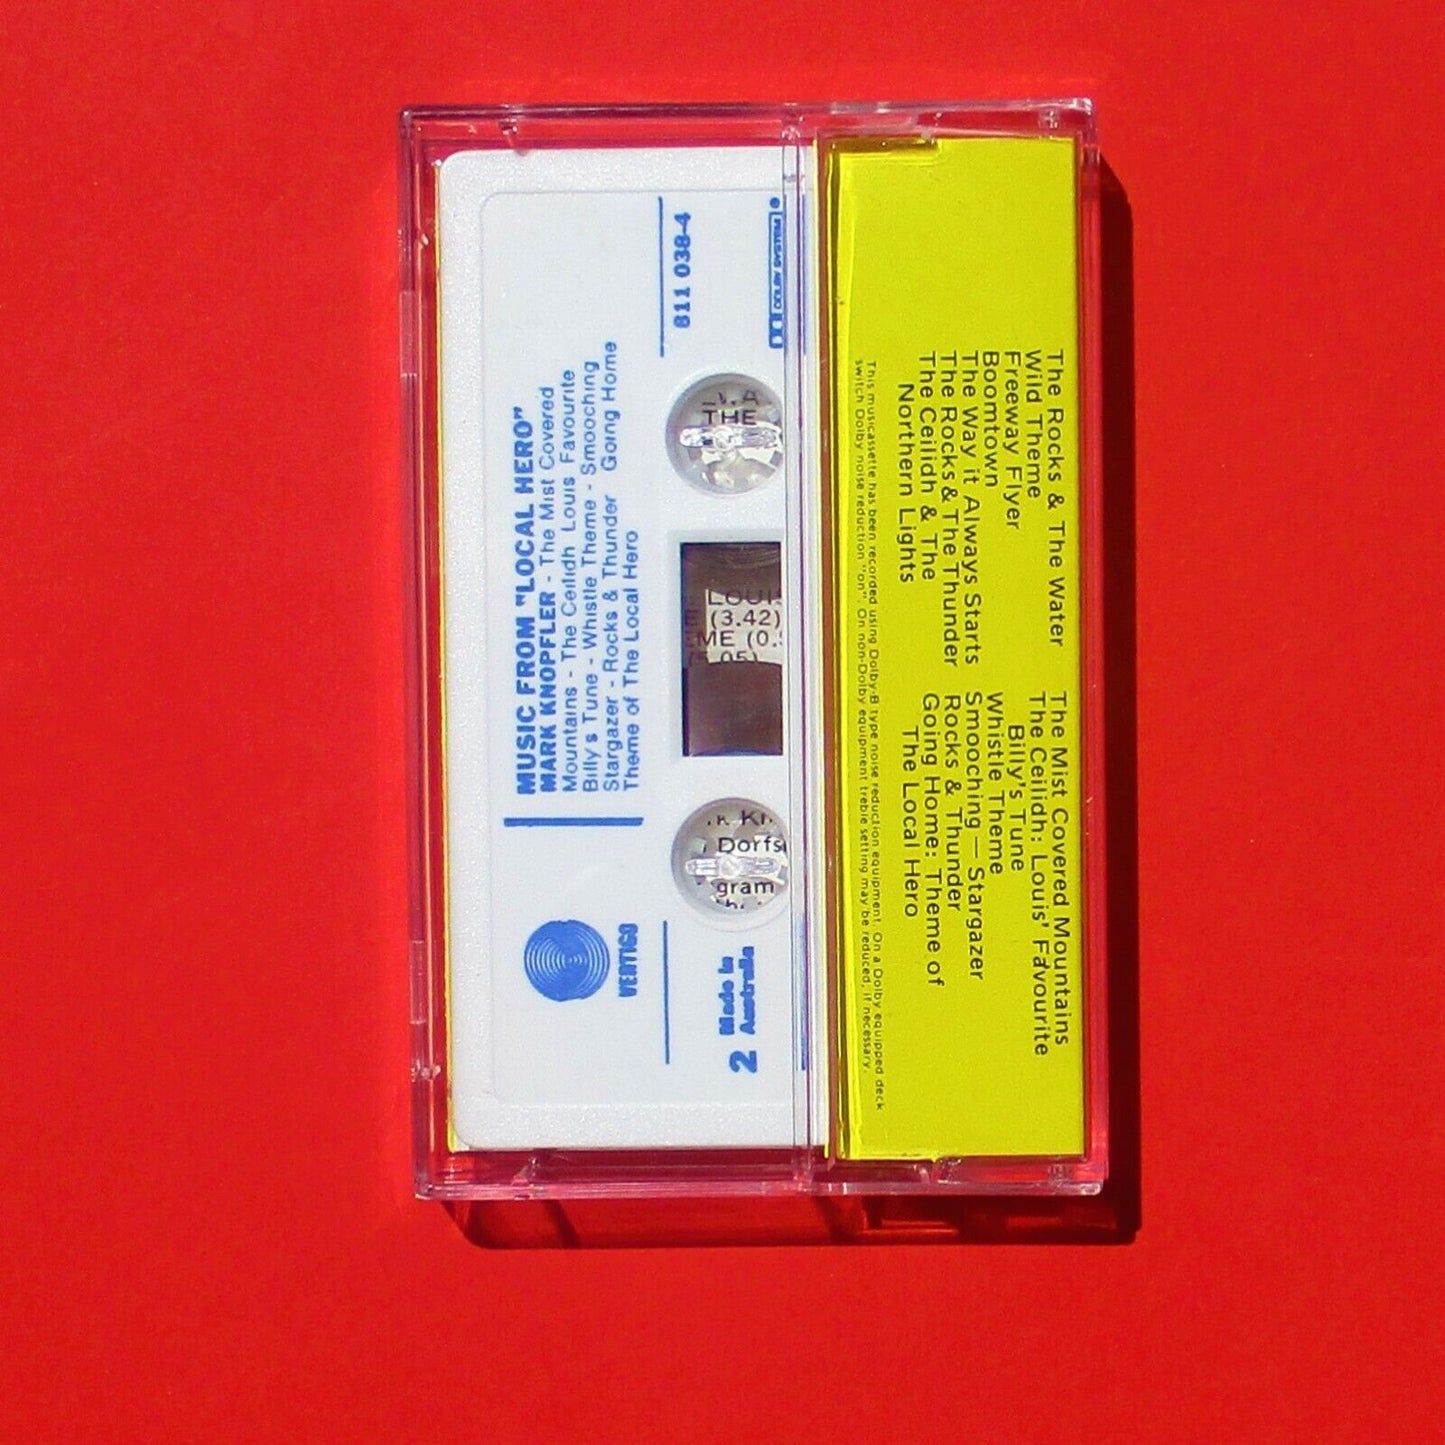 Local Hero Music by Mark Knopfler 1983 Australian Cassette Album